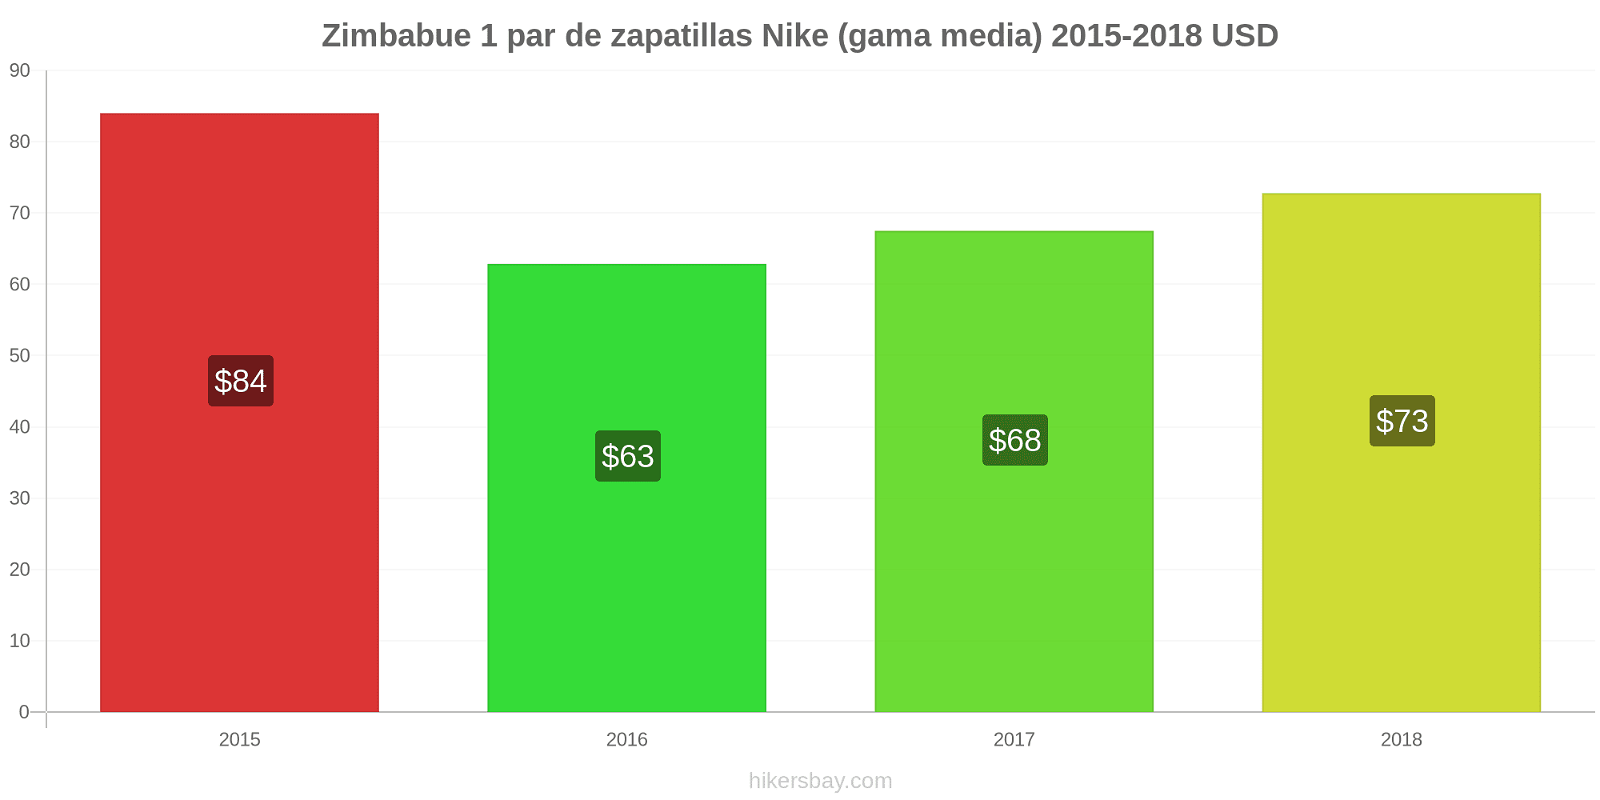 Zimbabue cambios de precios 1 par de zapatillas Nike (gama media) hikersbay.com